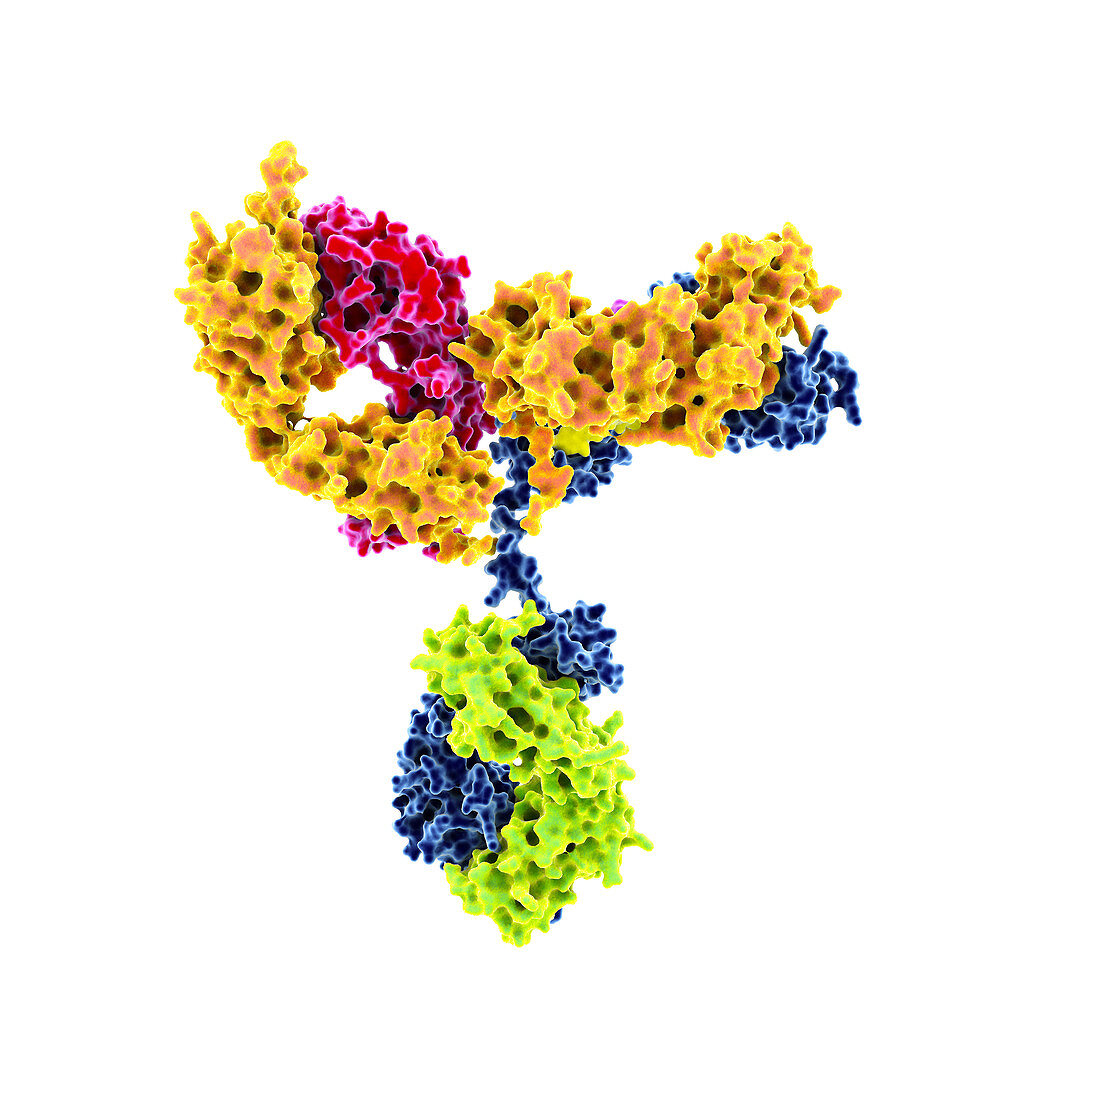 HIV antibody, illustration